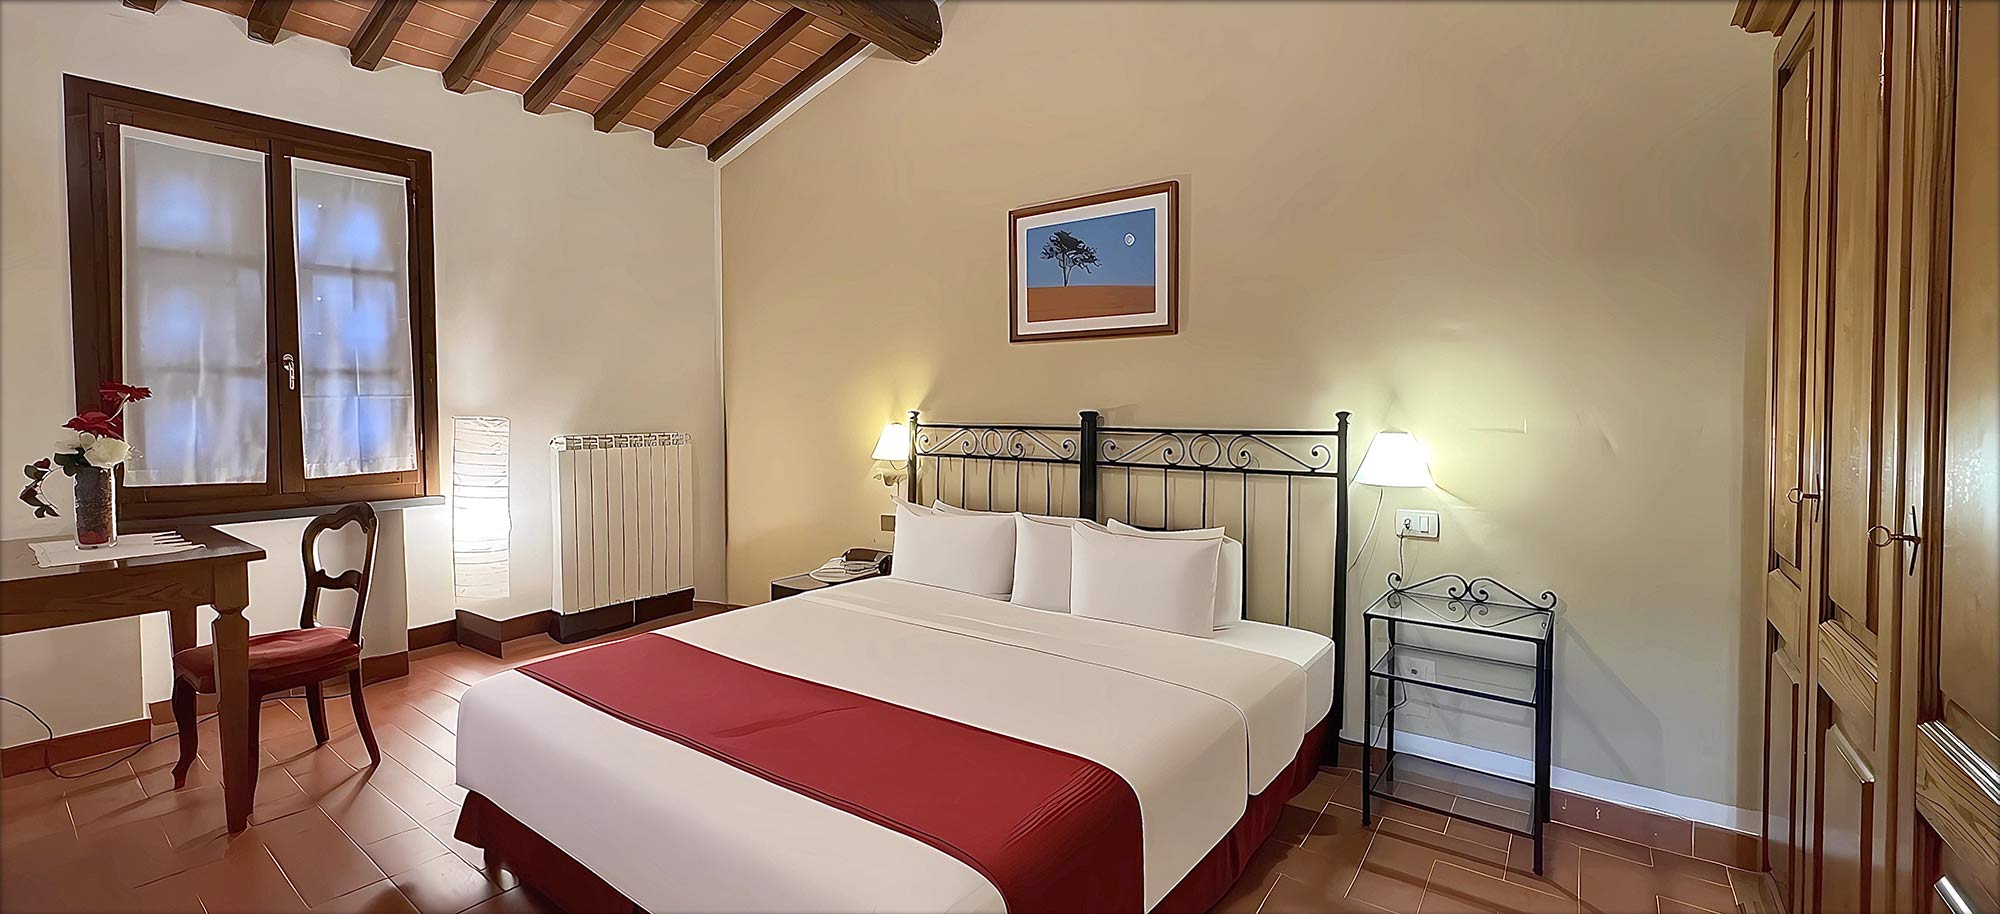 Corte Tommasi - Vakantie-appartementen in Toscane - 207 - Toscaans appartement met zwembad